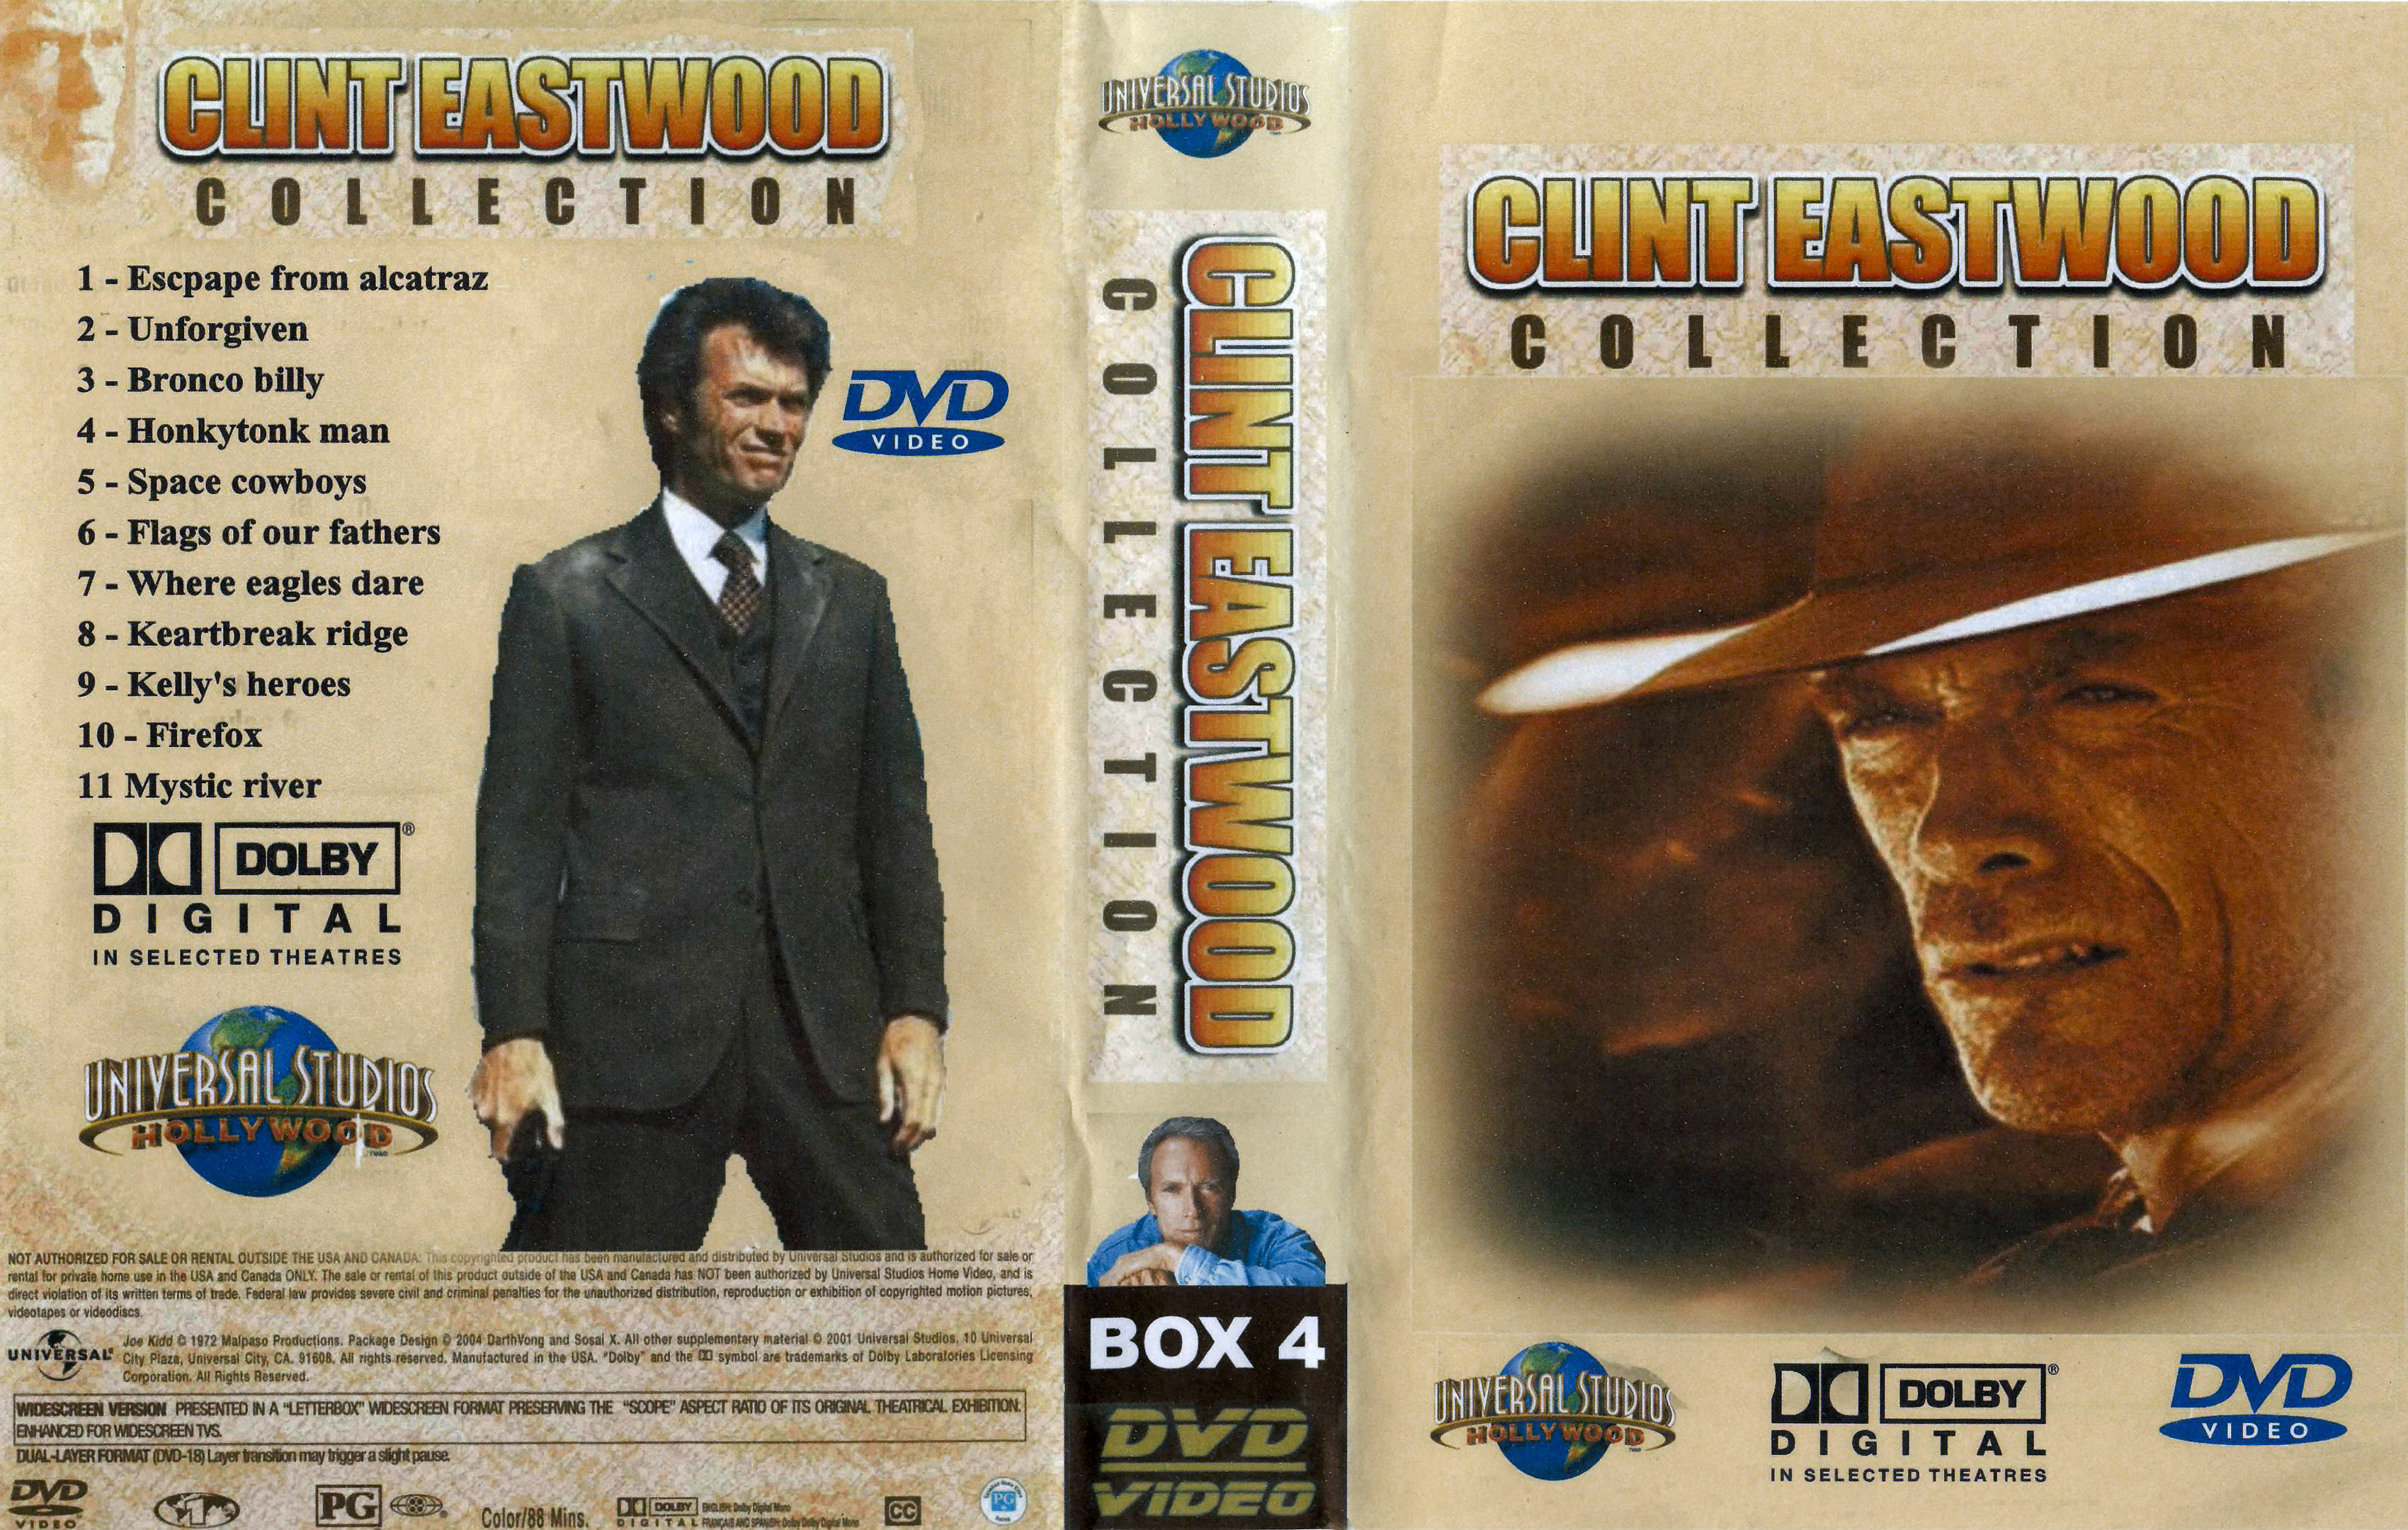 Clint Eastwood Collectie Box 4 DvD 3 van 10